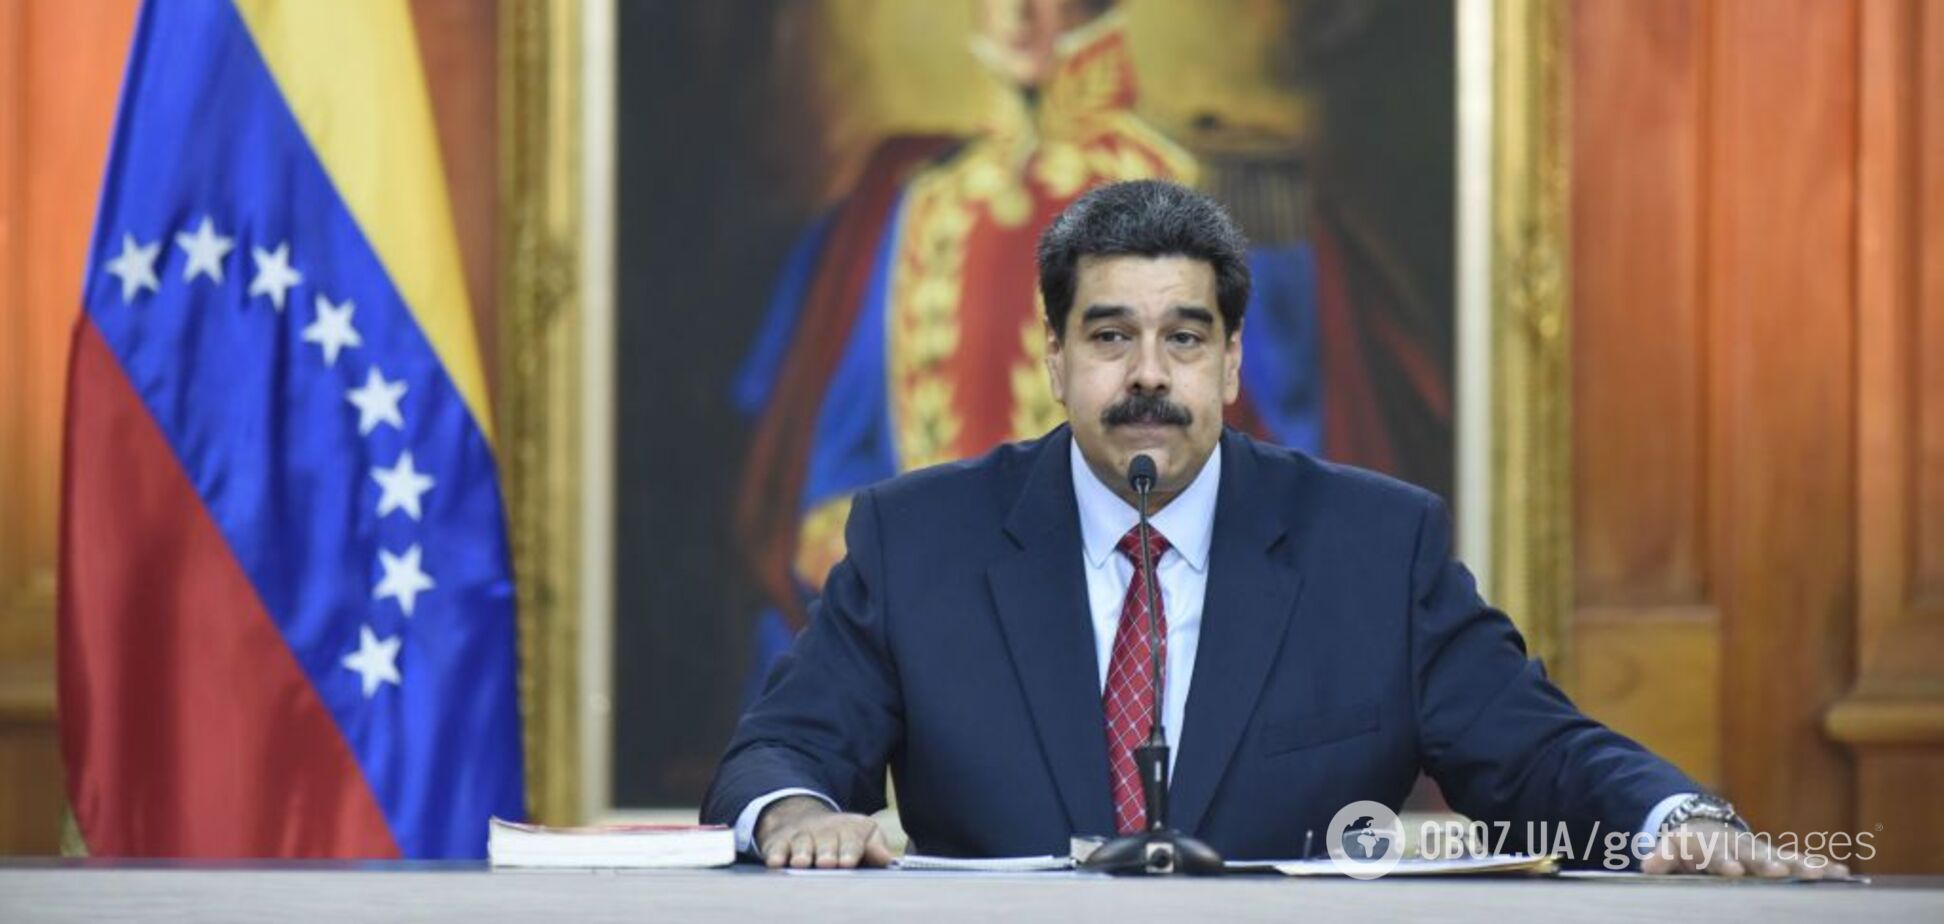 Промосковский режим Мадуро вошел в стадию агонии